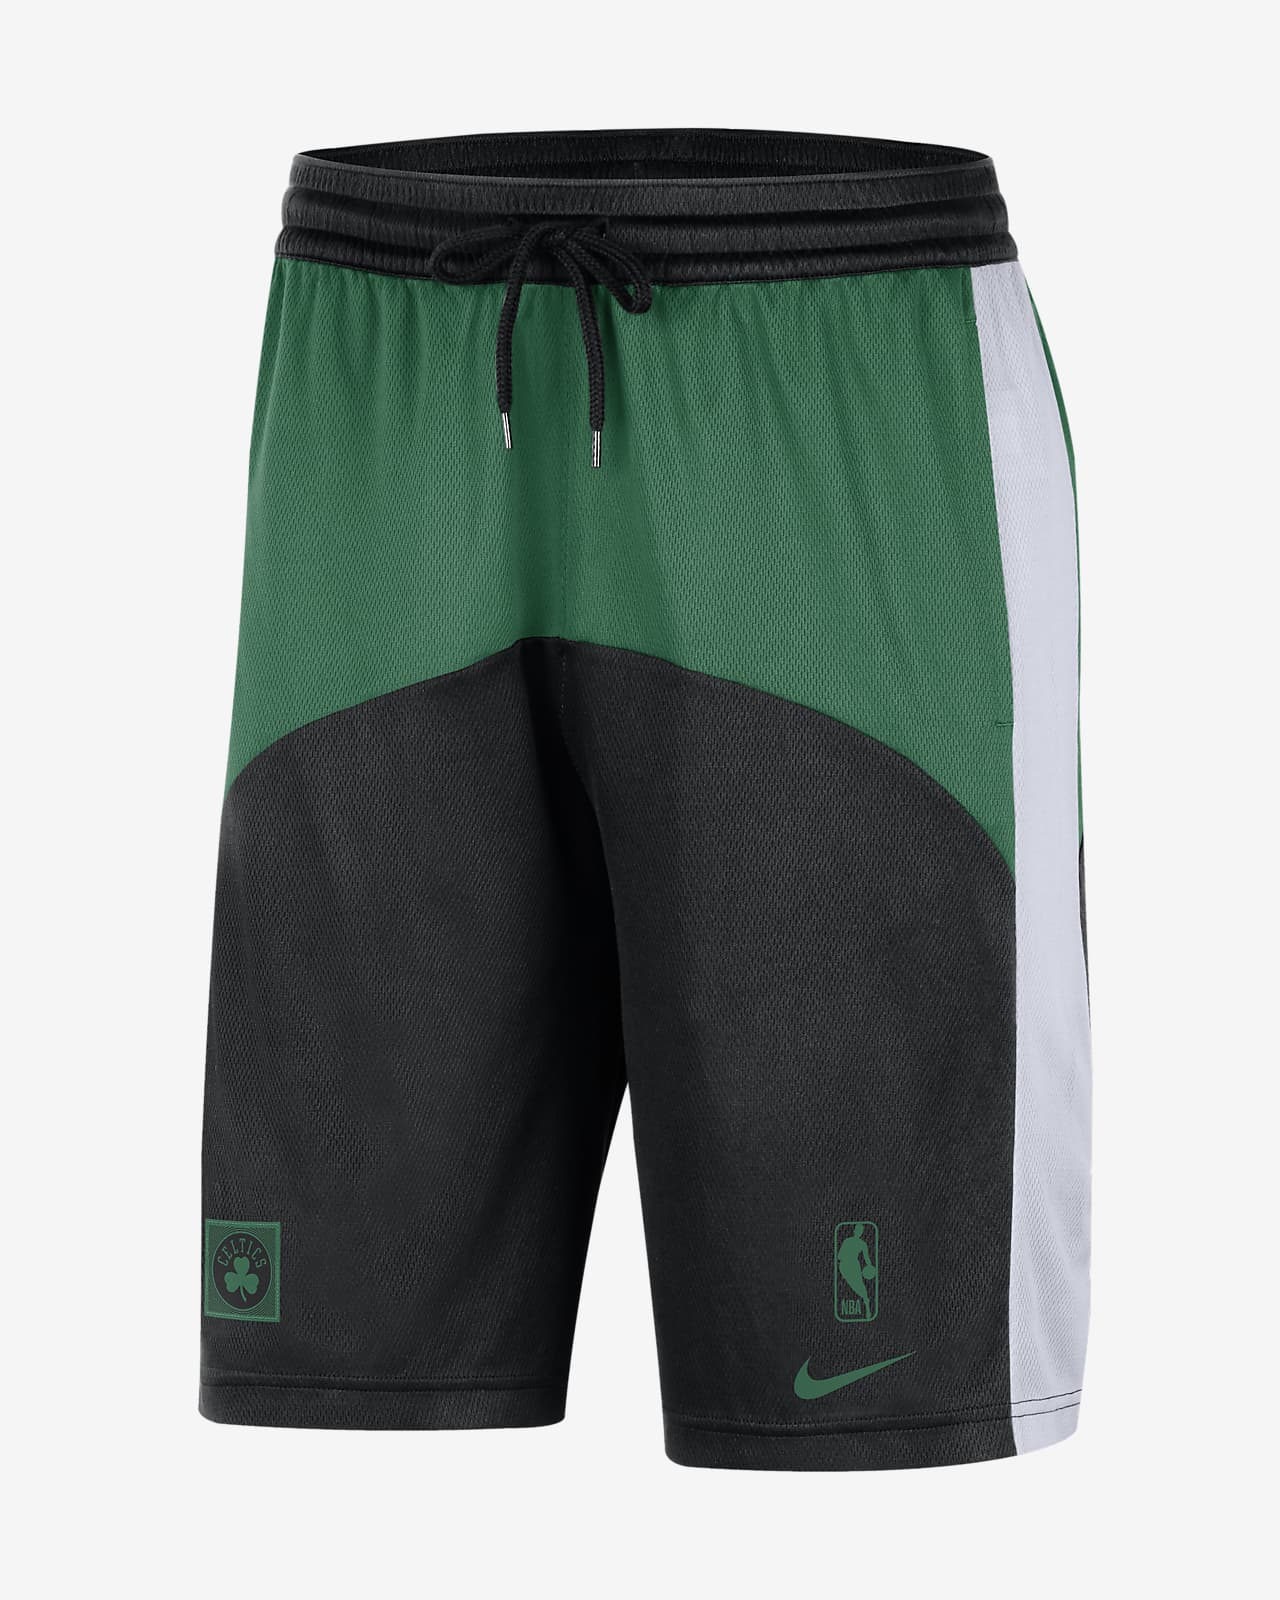 Boston Celtics Starting 5 Men's Nike Dri-FIT NBA Shorts